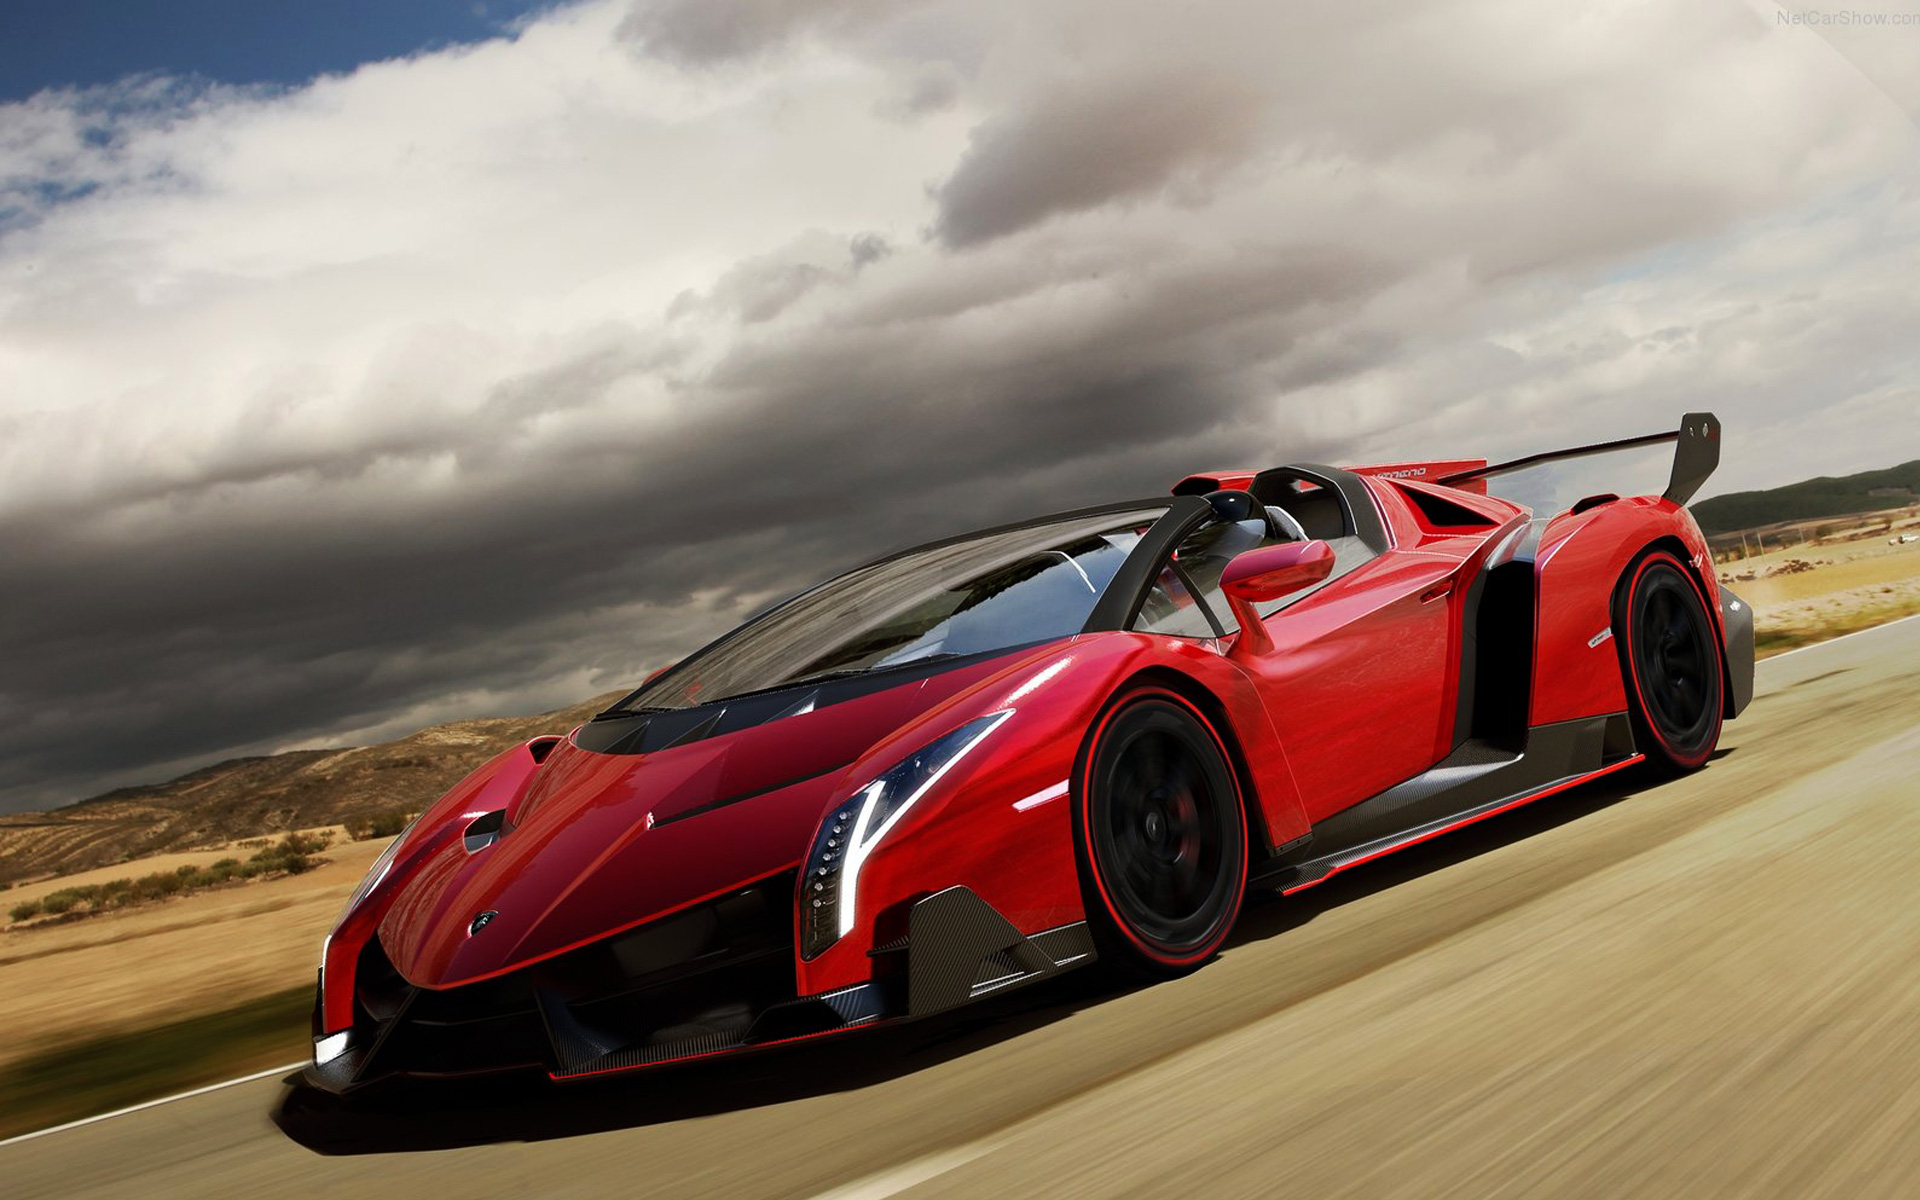 Lamborghini Veneno Red And Black HD Wallpaper Background Image